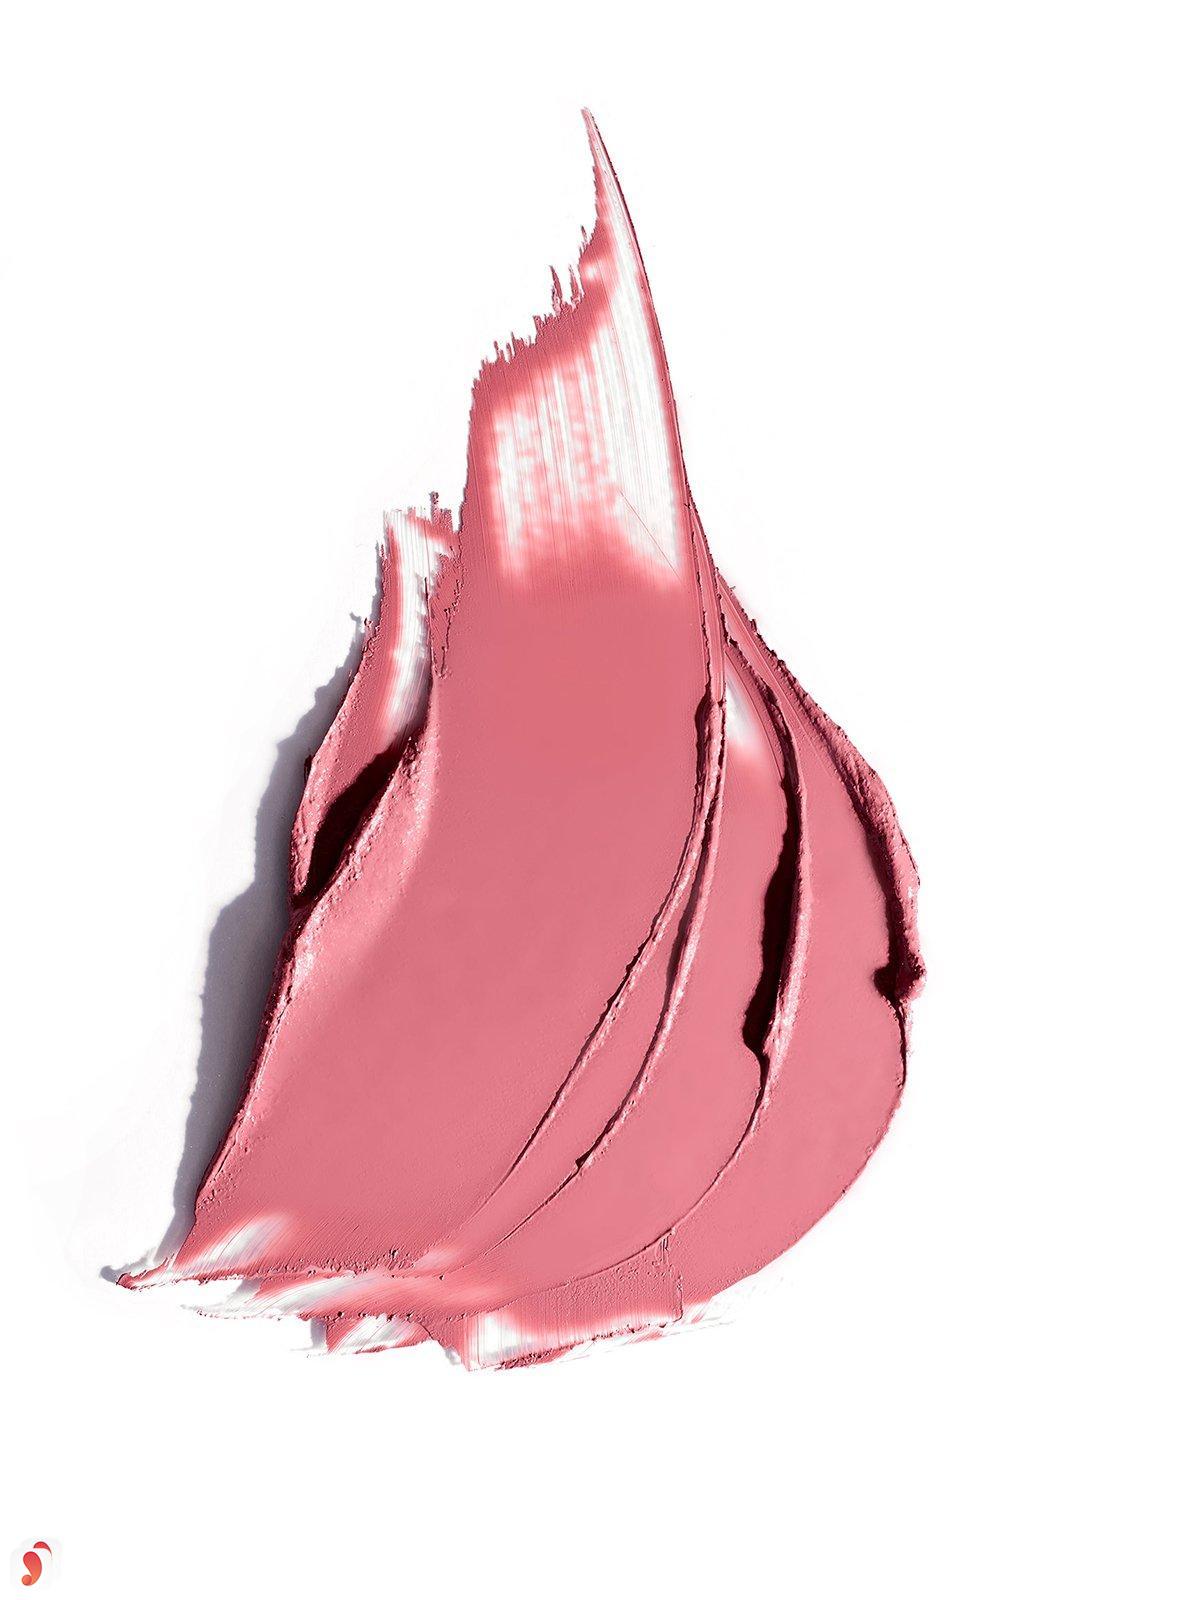 Review son Ilia Color Block High Impact Lipstick 12